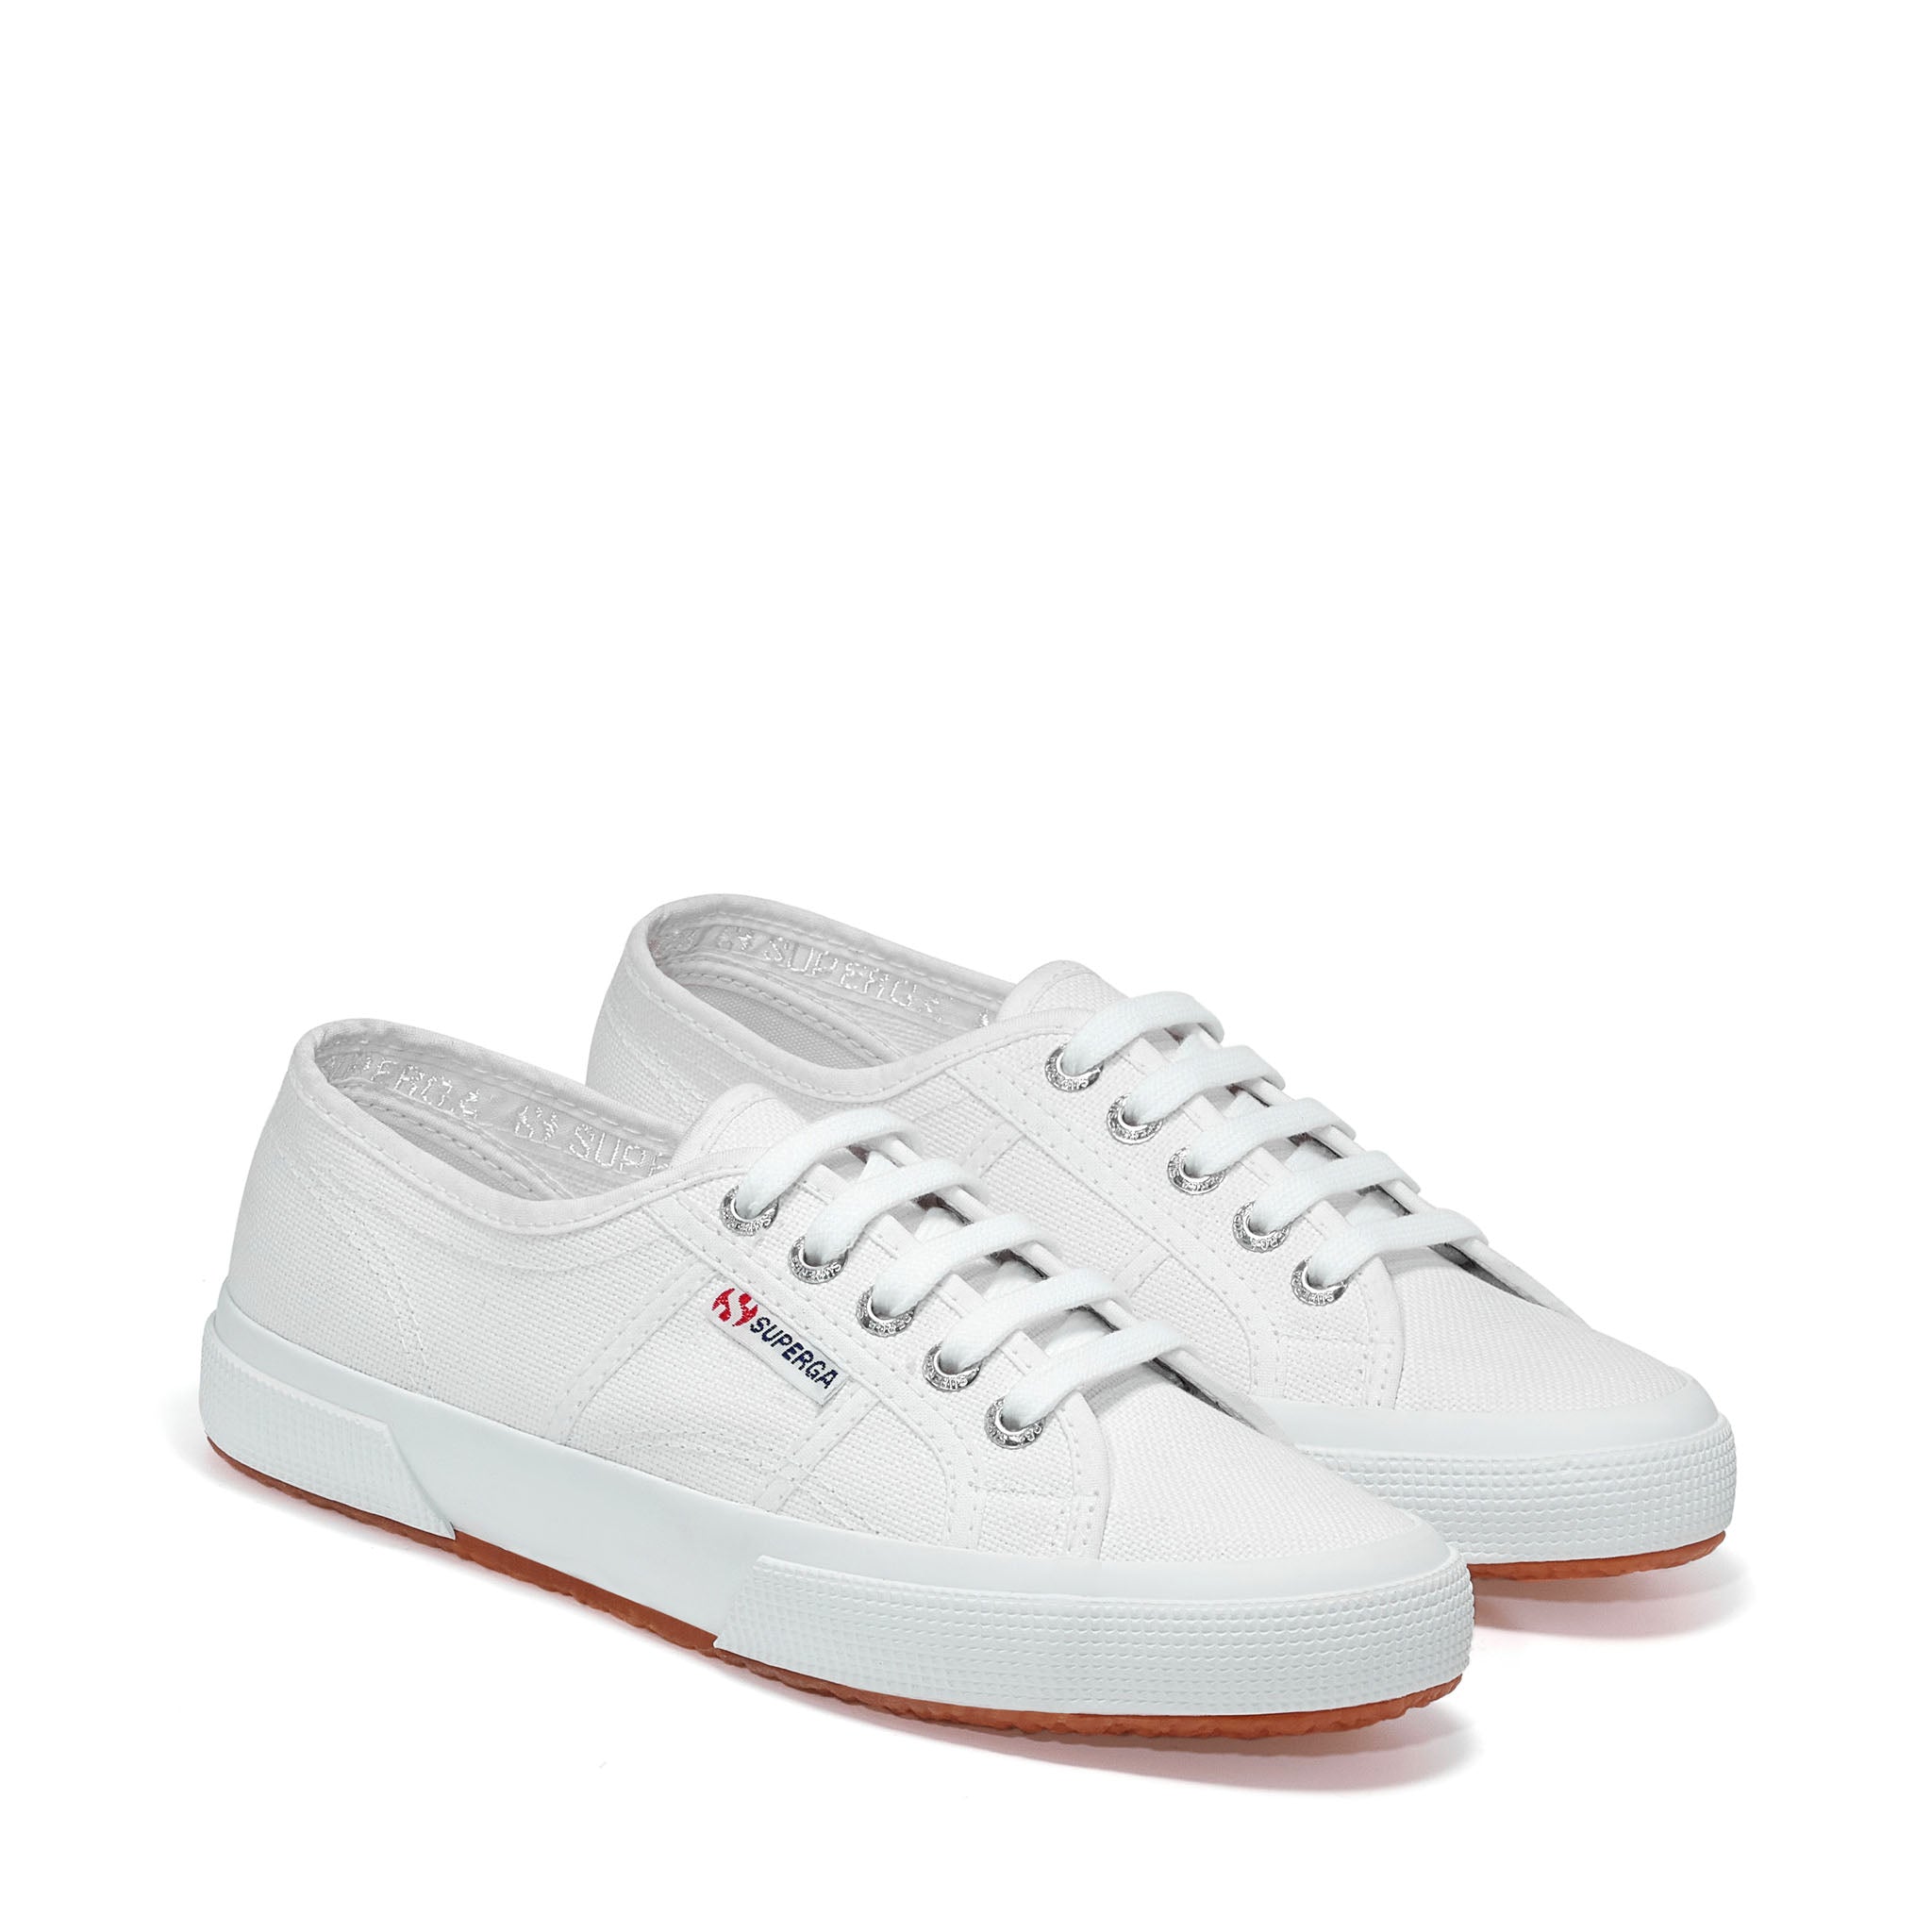 2750 Cotu Classic Sneakers - White – Superga US